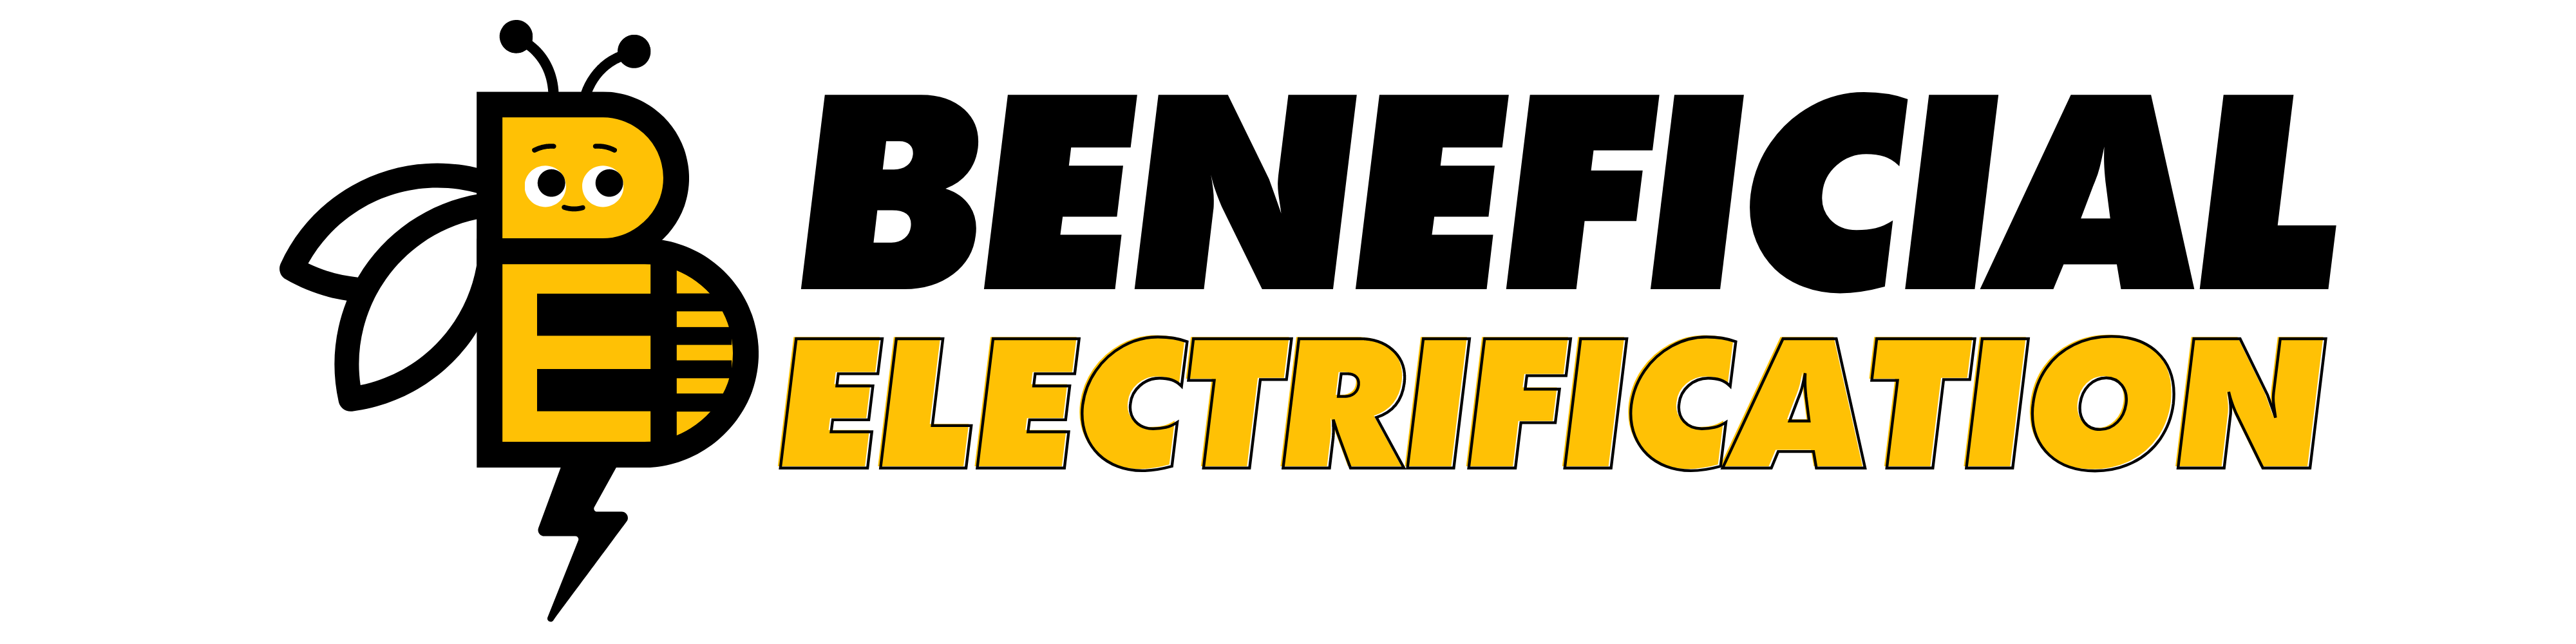 Chugach Electric Beneficial Electrification logo